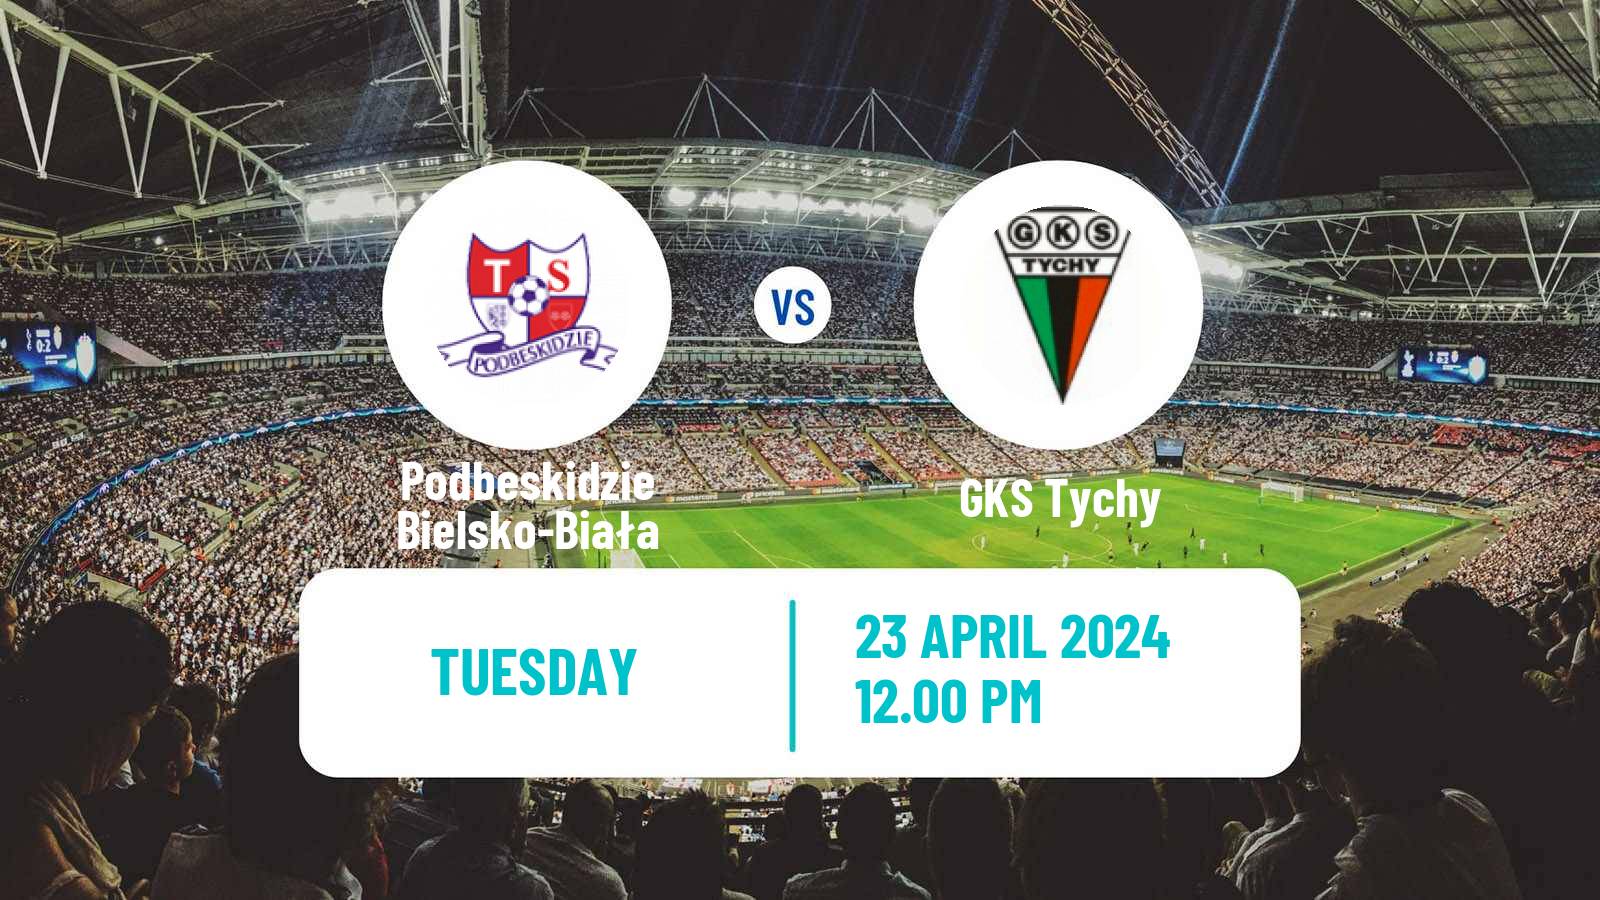 Soccer Polish Division 1 Podbeskidzie Bielsko-Biała - GKS Tychy